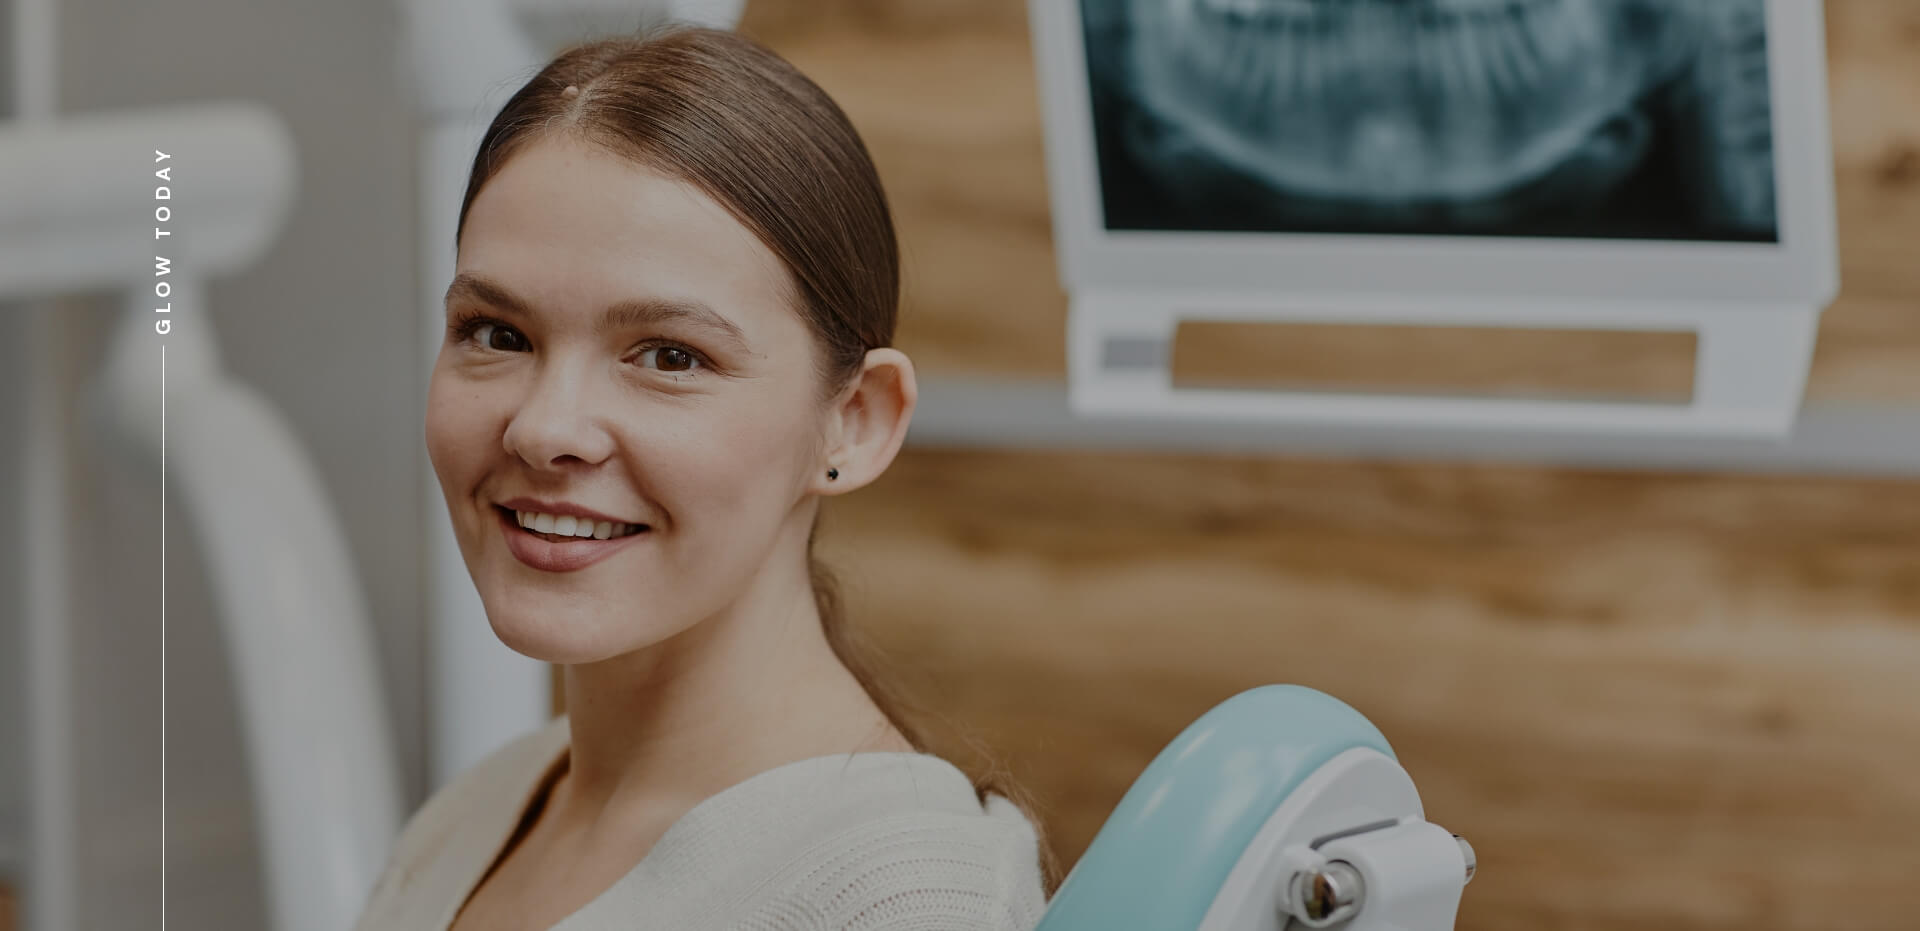 Smiling woman at dental